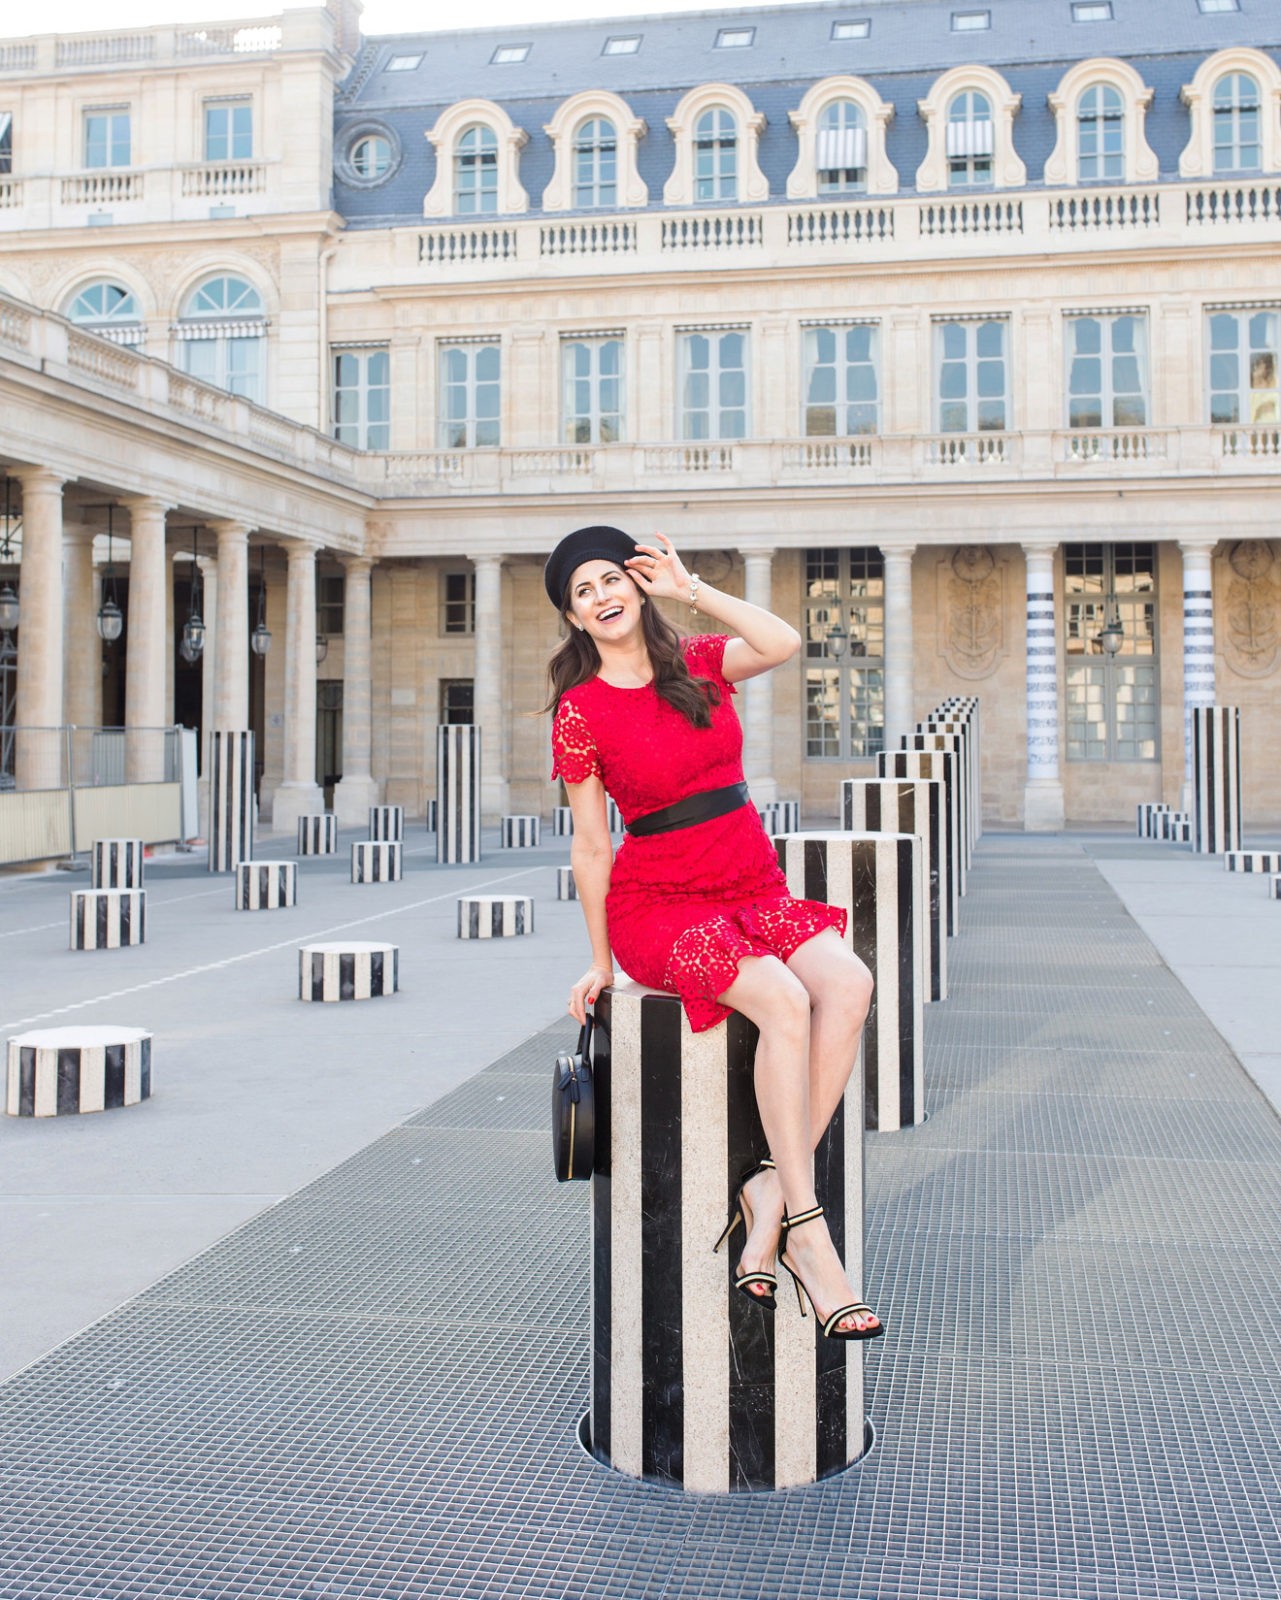 The Ultimate Paris Travel Guide featured by popular Travel Blogger Laura Lily, Palais-Royal, Best Instagram Spots in Paris, Les Colonnes de Buren, 